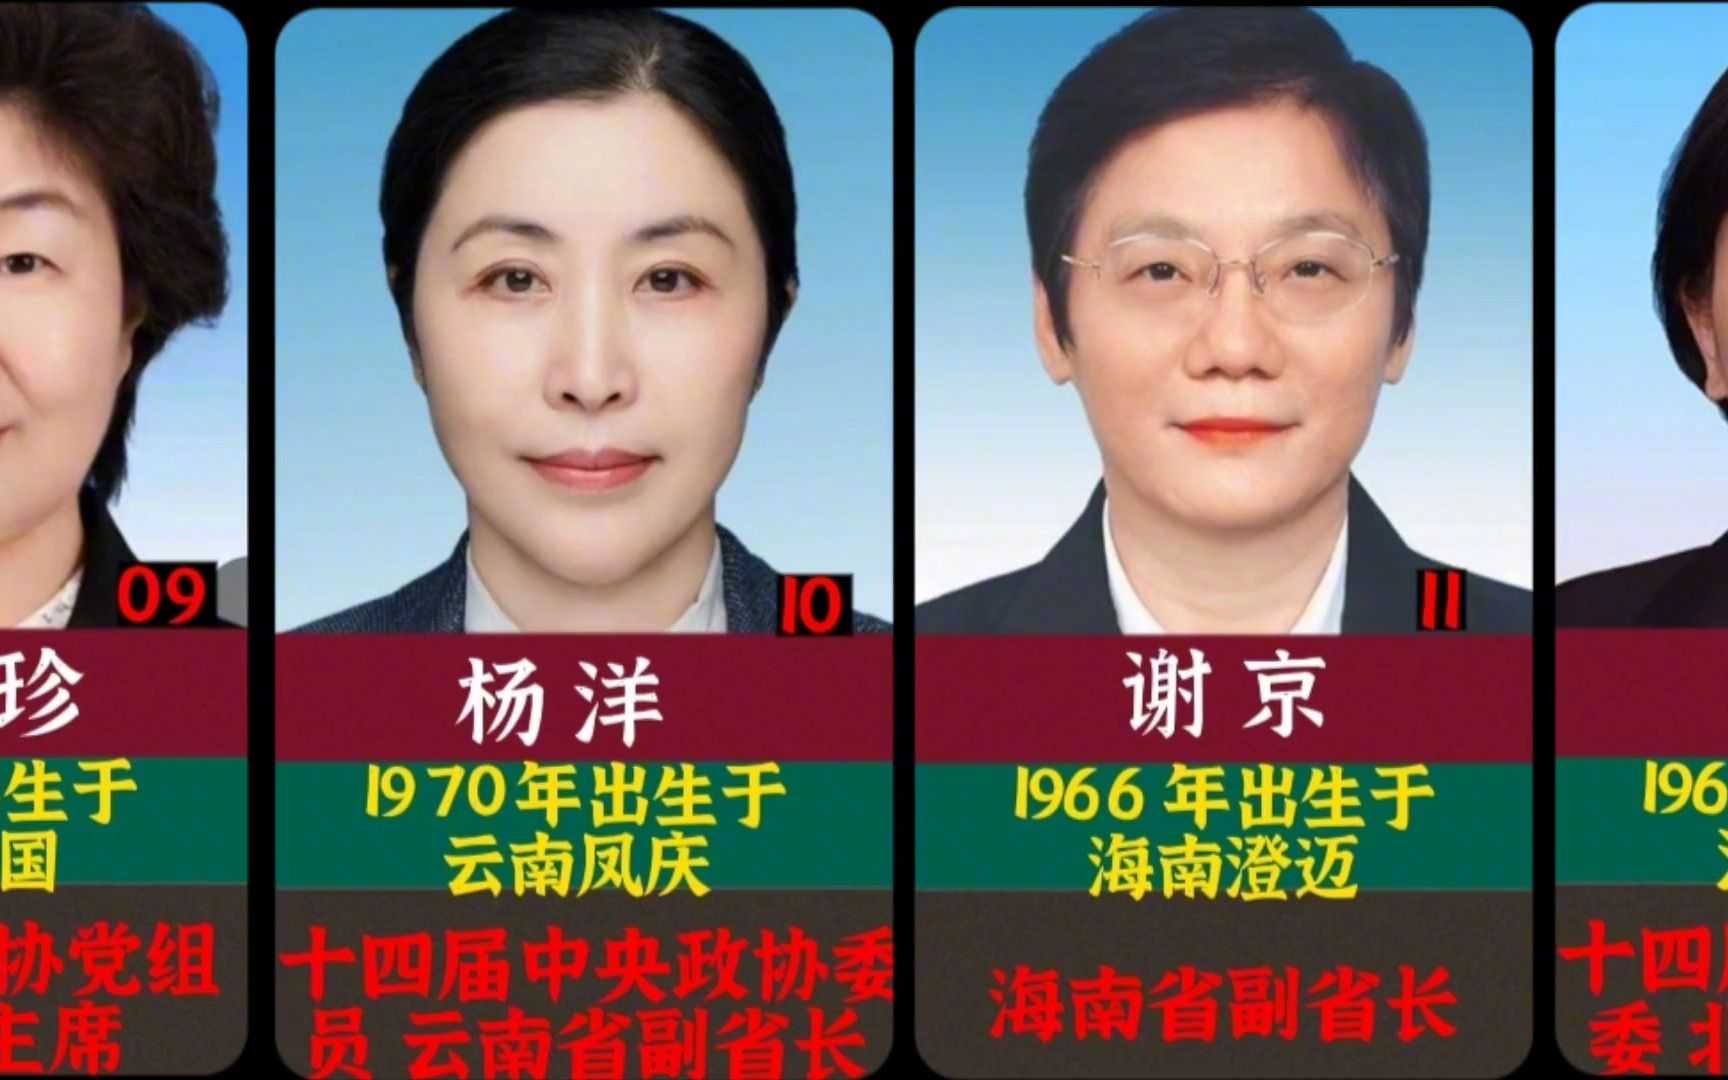 中国现任省部级女干部图片